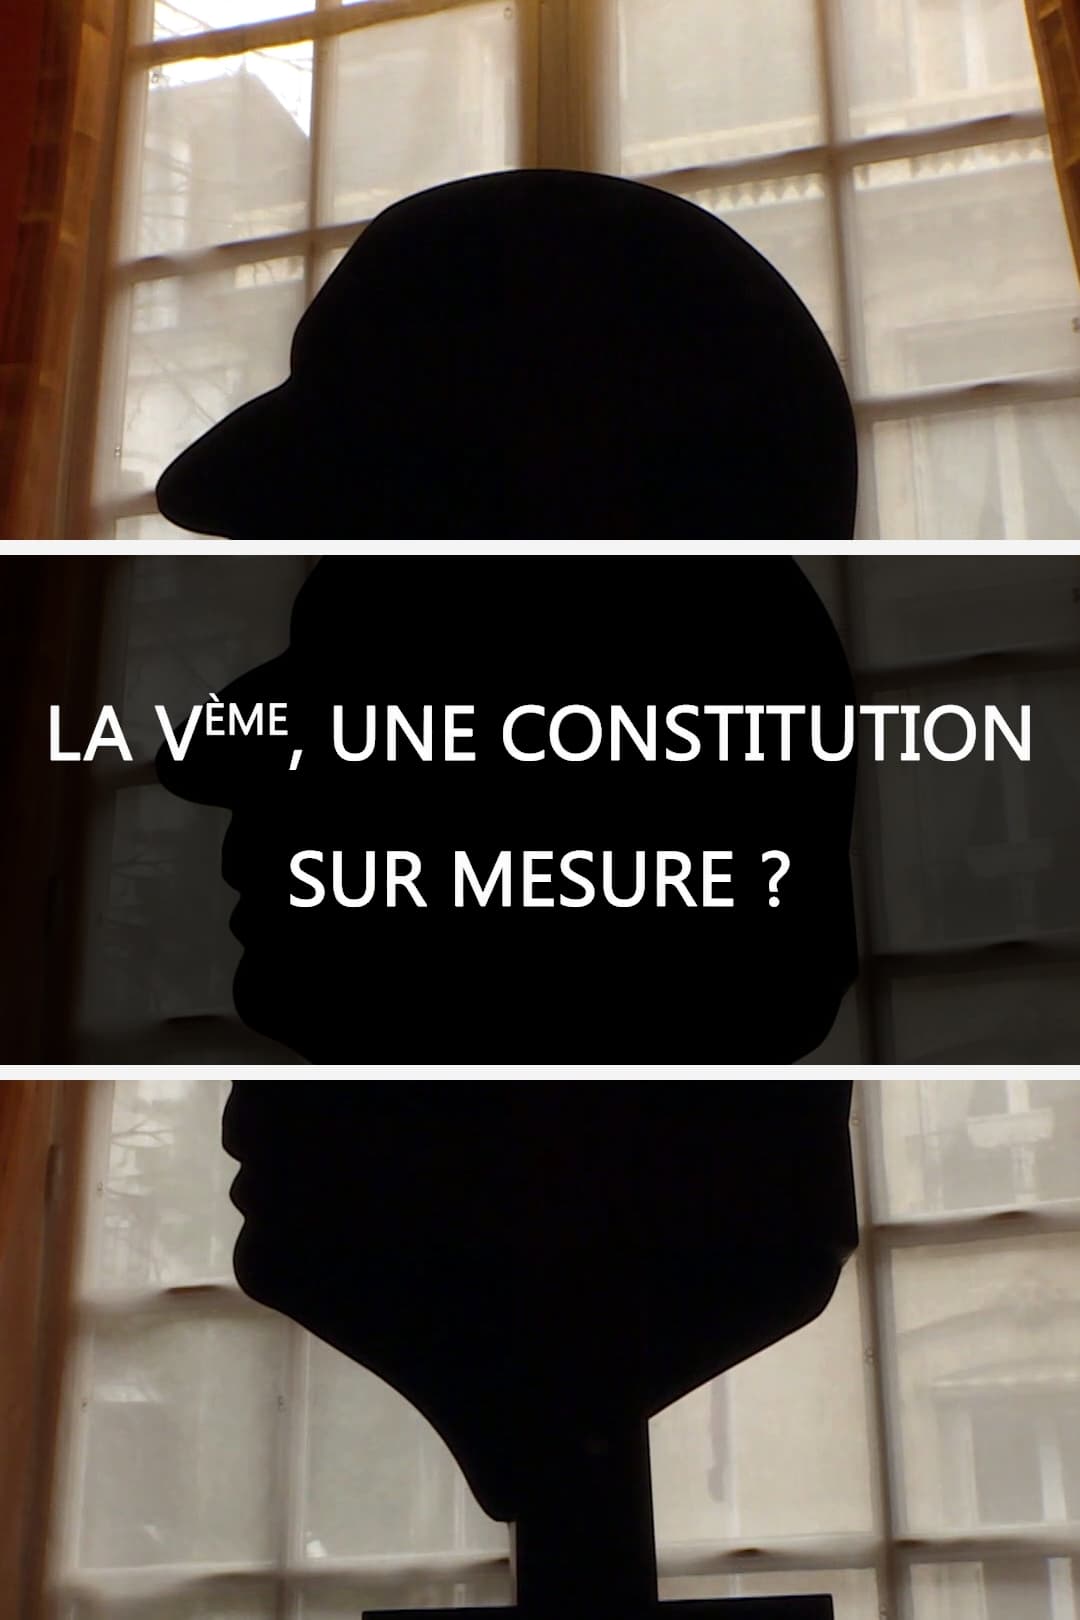 La Ve, une constitution sur mesure ?